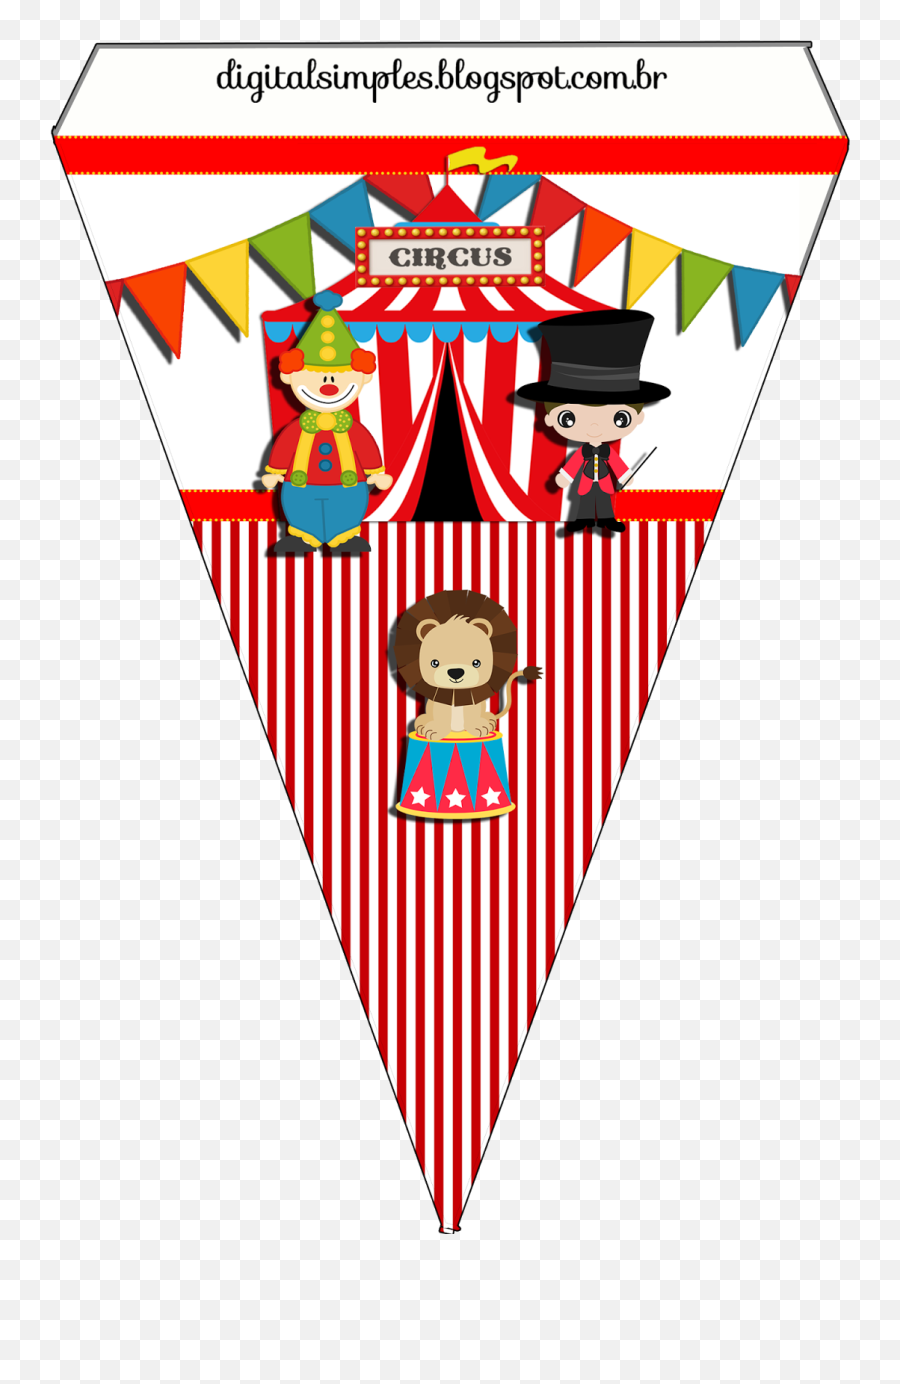 250 Ideas De Los Gemelos Fiesta De Circo Cumpleaños De Emoji,Circus Tent And Clown Emoji Meaning